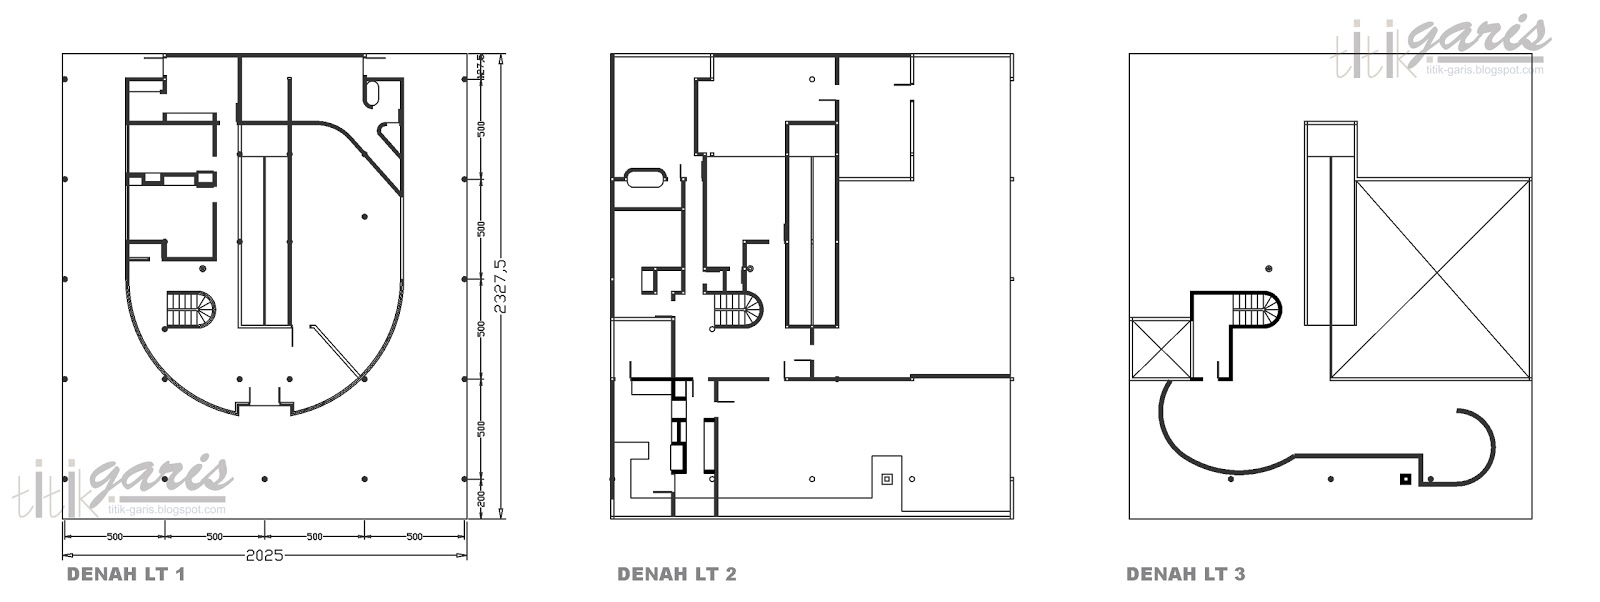 ReDrawing Villa Savoye karya Le Corbusier - Rumah Garis